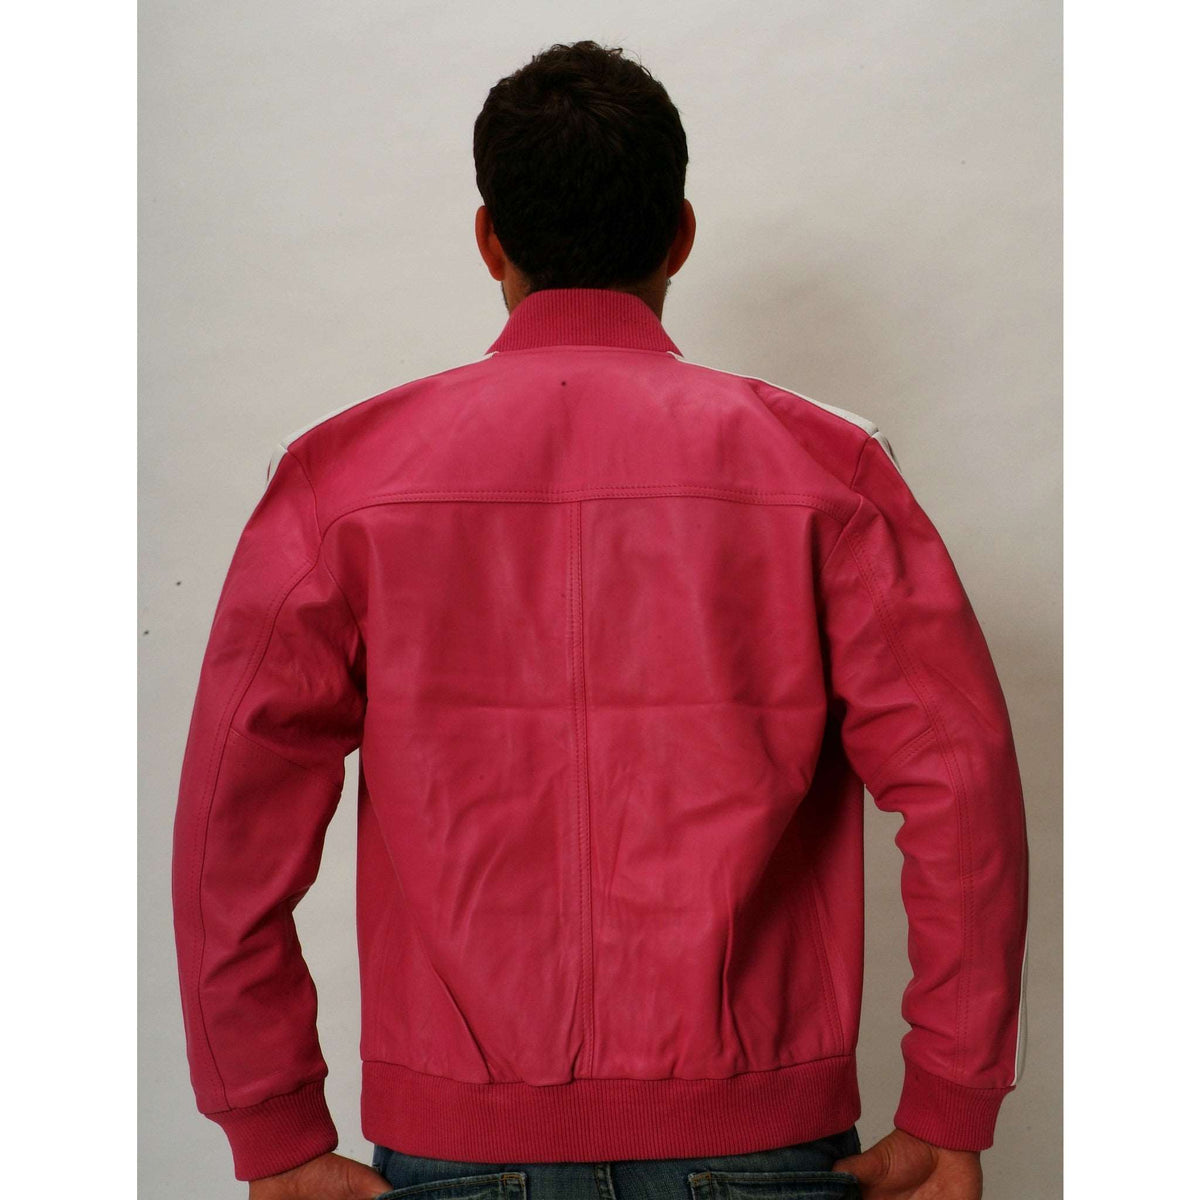 Mens pink leather track jacket back